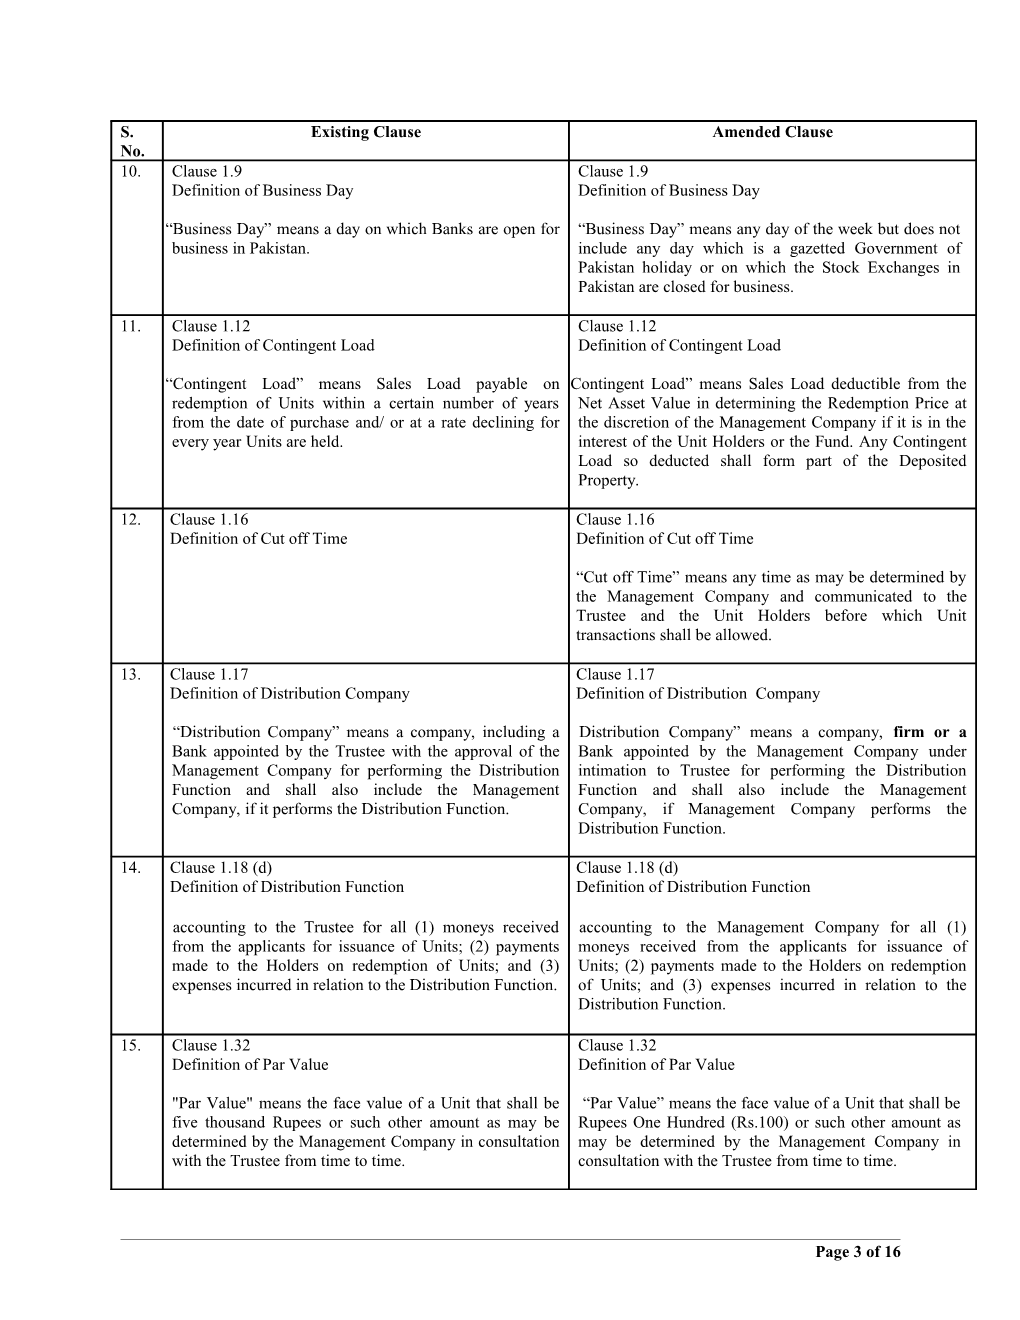 Amendments for Trust Deed of Unit Trust of Pakistan